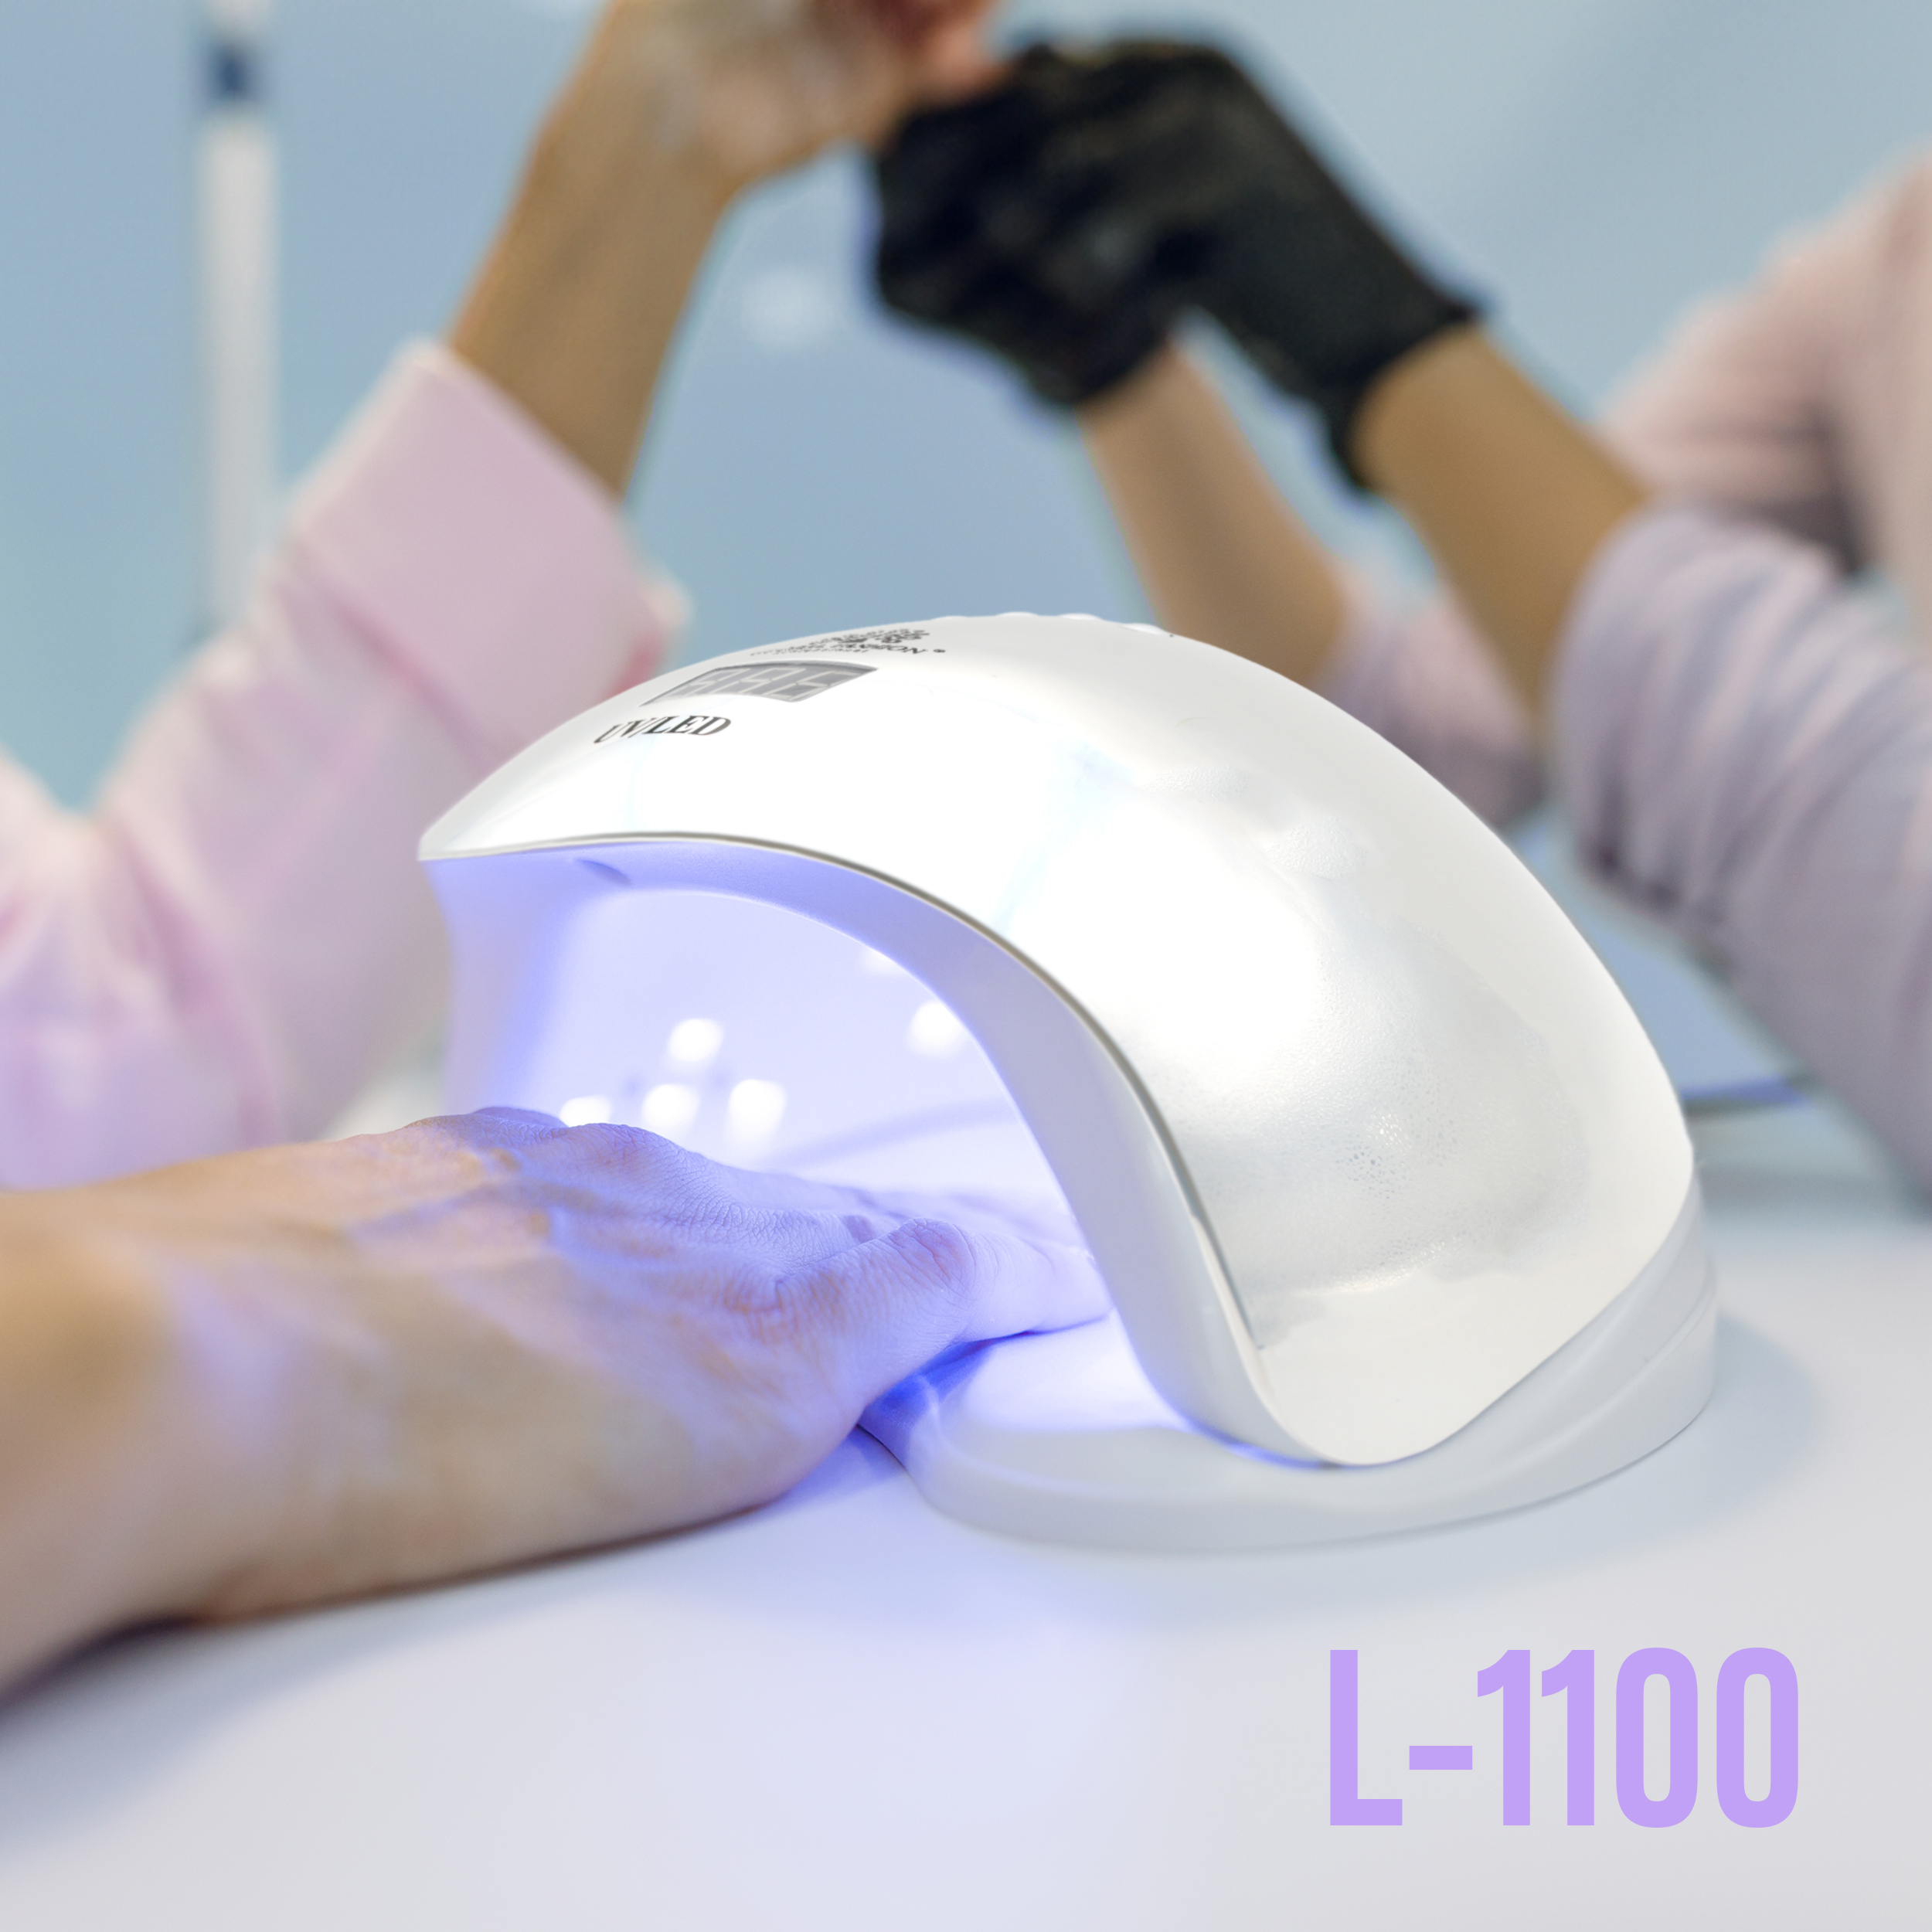 Lampa uscare unghii UV LED L-1100 72W - calitate superioara